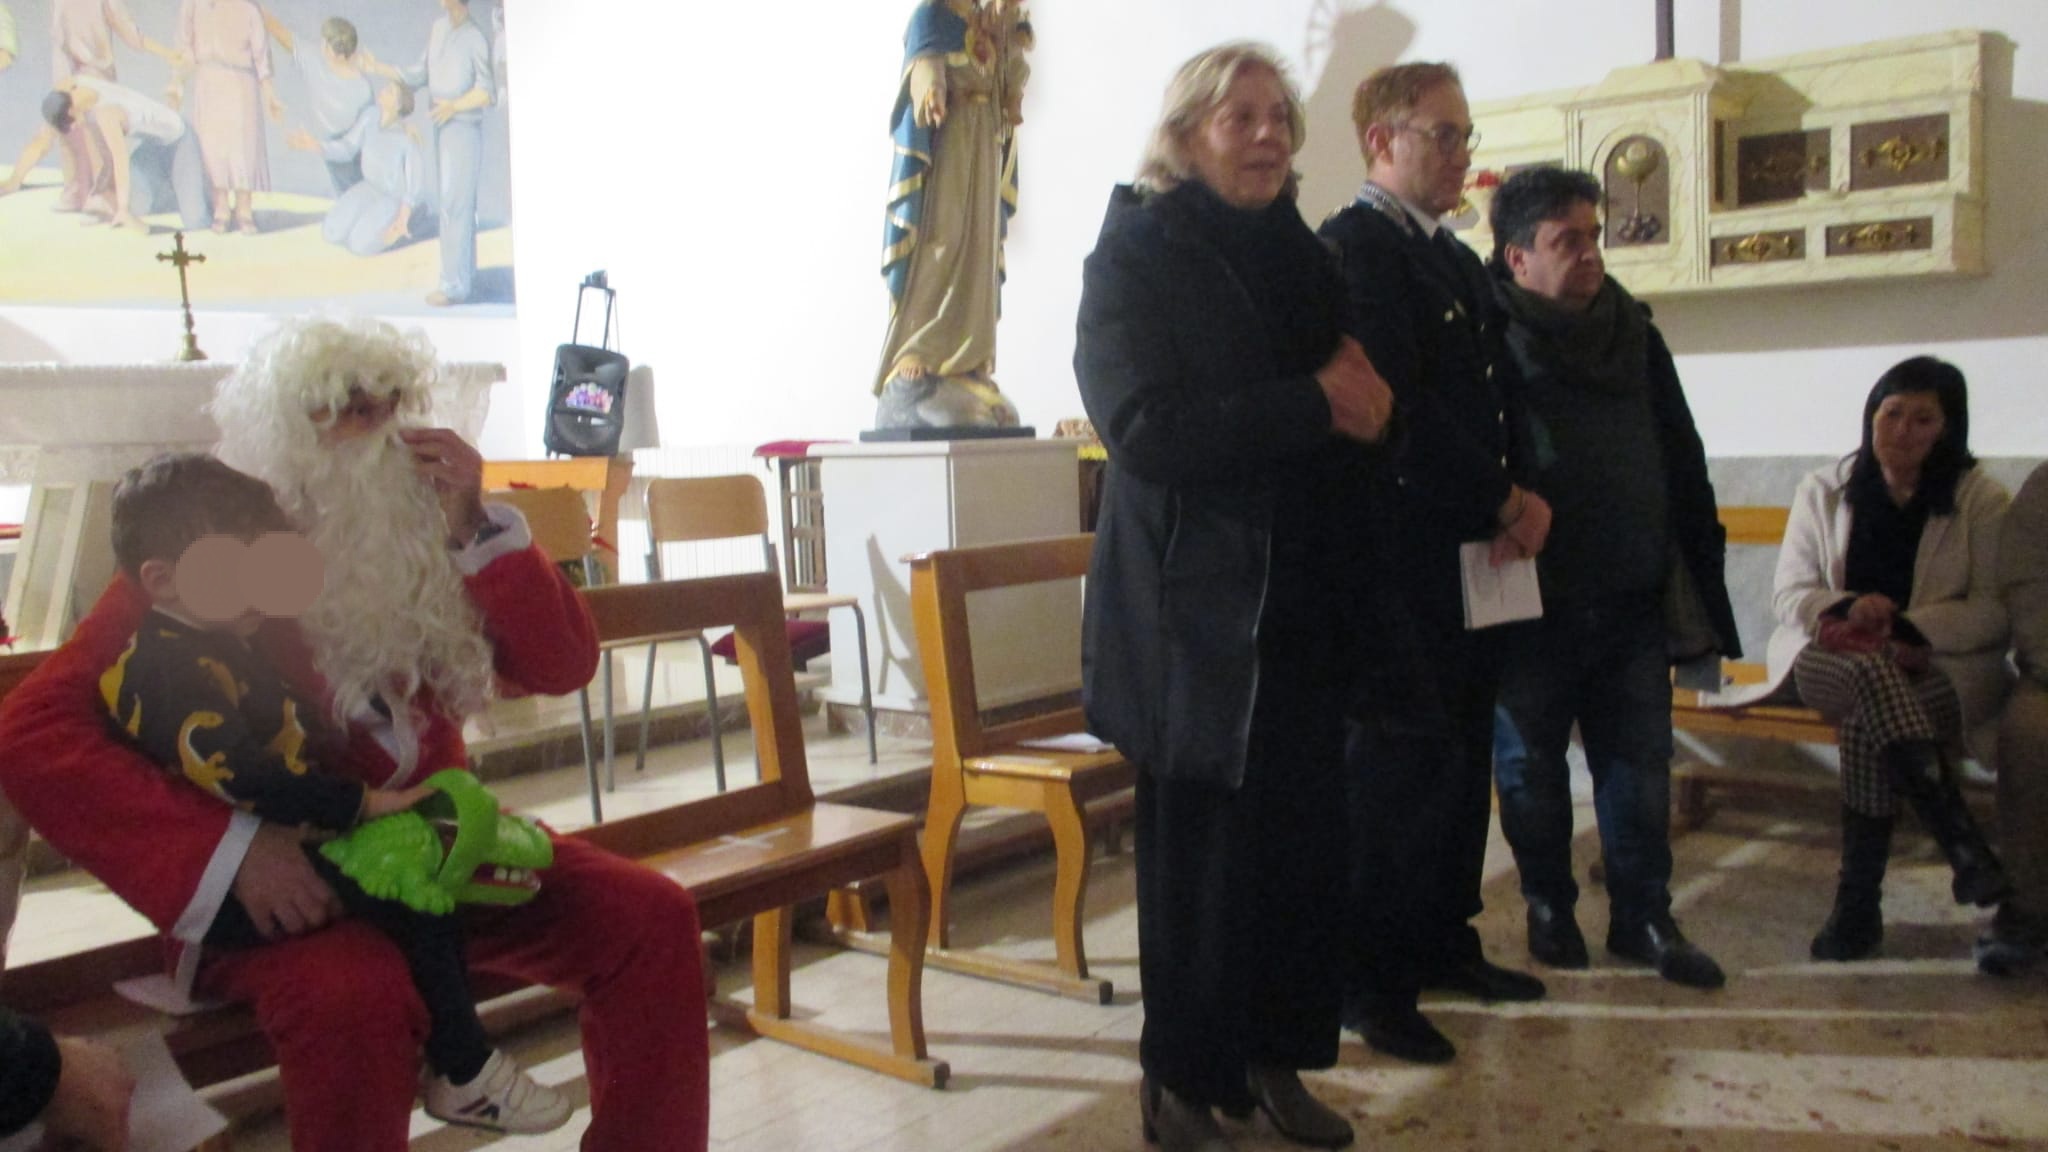 Caltanissetta, al carcere Malaspina è ancora festa con il progetto “Papà racconta il Natale”